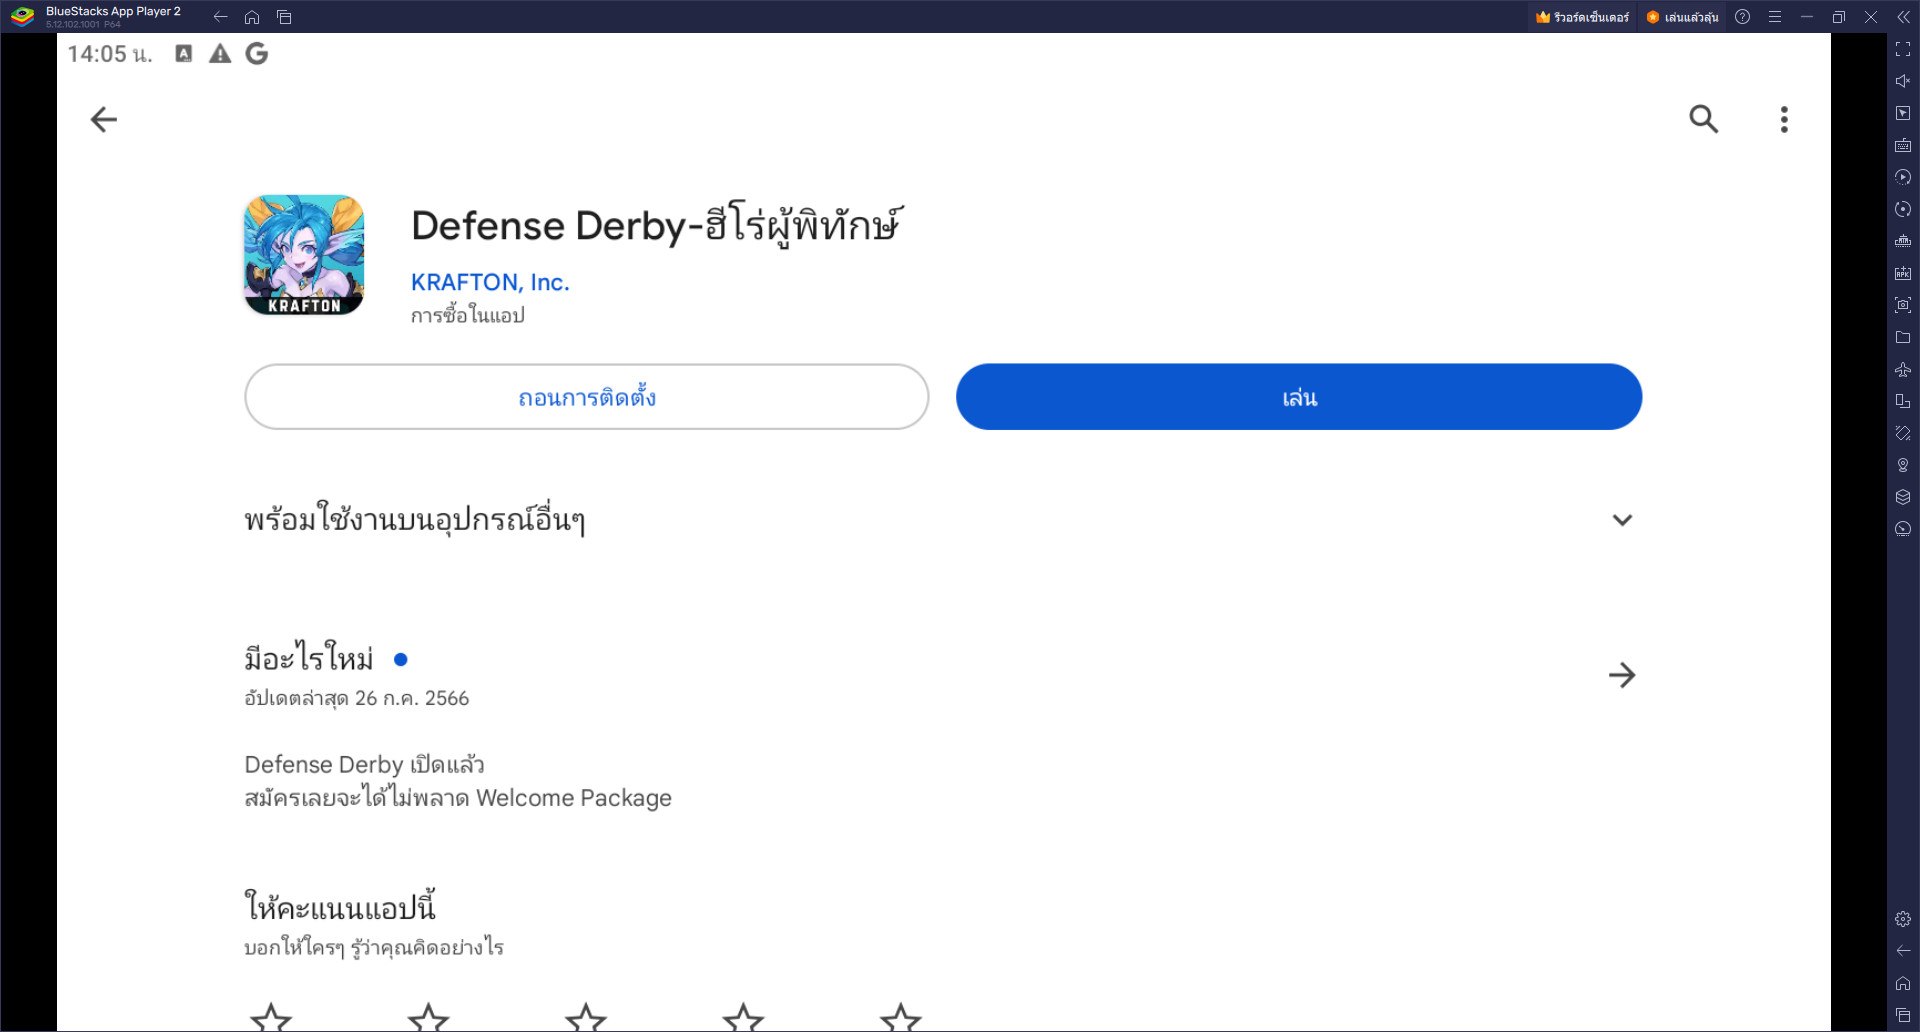 วิธีติดตั้งและเล่น Defense Derby-ฮีโร่ผู้พิทักษ์ บน PC และ Mac ผ่าน BlueStacks